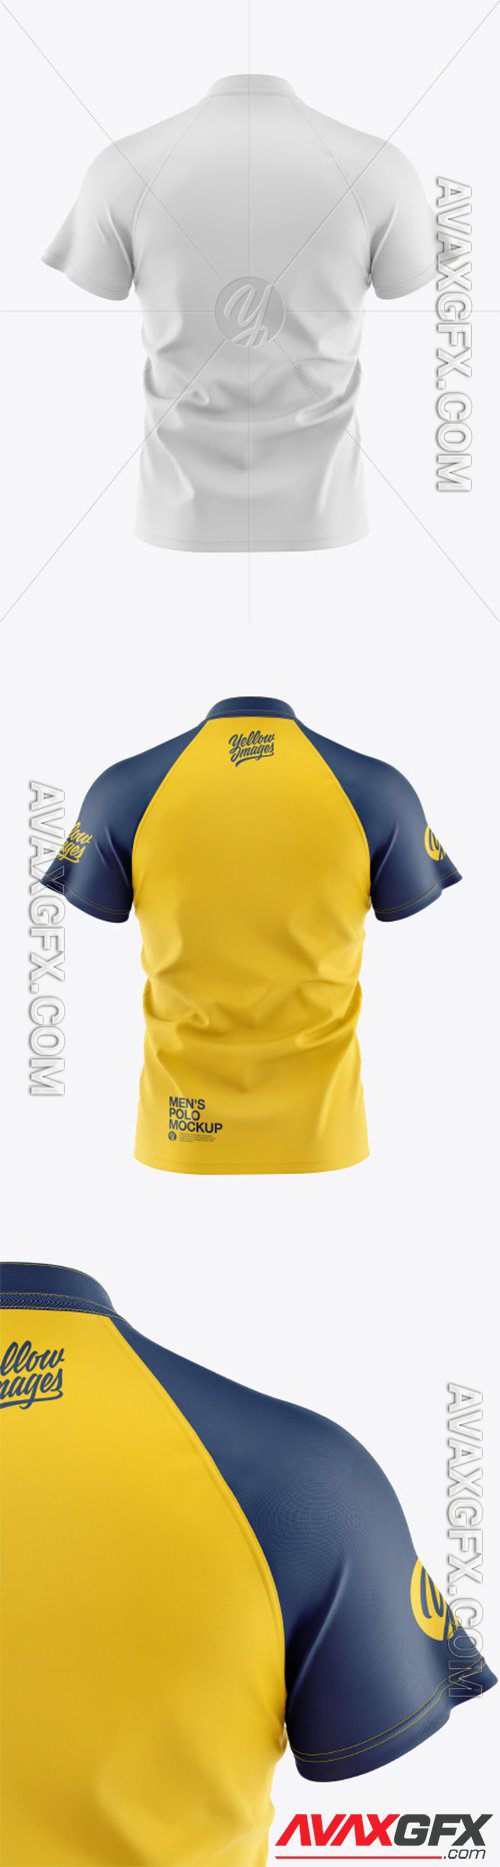 Men's Polo Shirt Mockup 56526